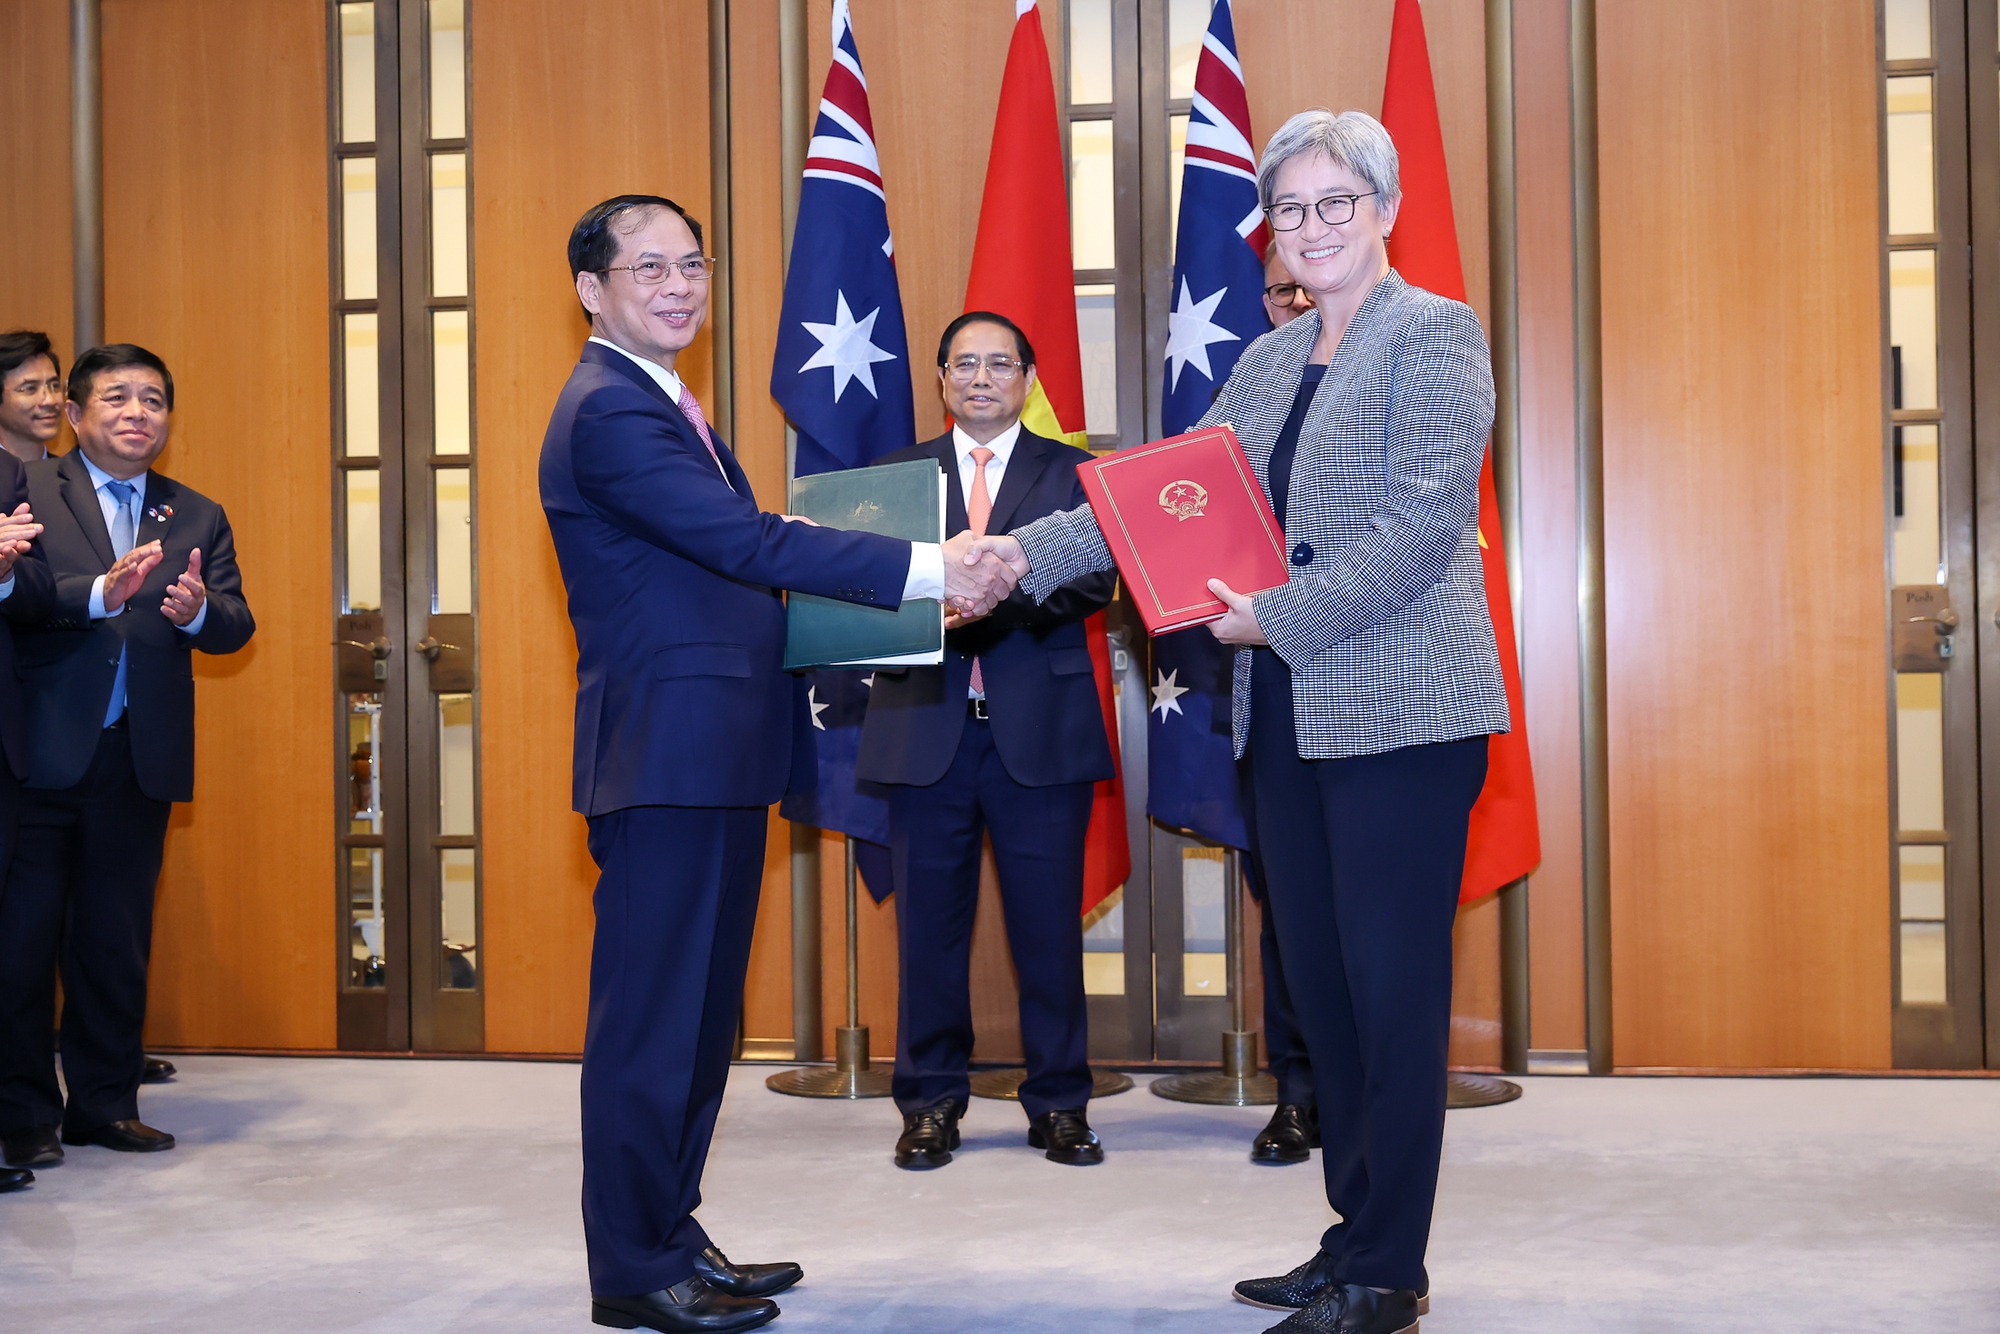 Lãnh đạo Bộ Ngoại giao Việt Nam và Australia thay mặt các bộ, ngành trao 11 văn kiện hợp tác giữa hai nước - Ảnh: VGP/Nhật Bắc